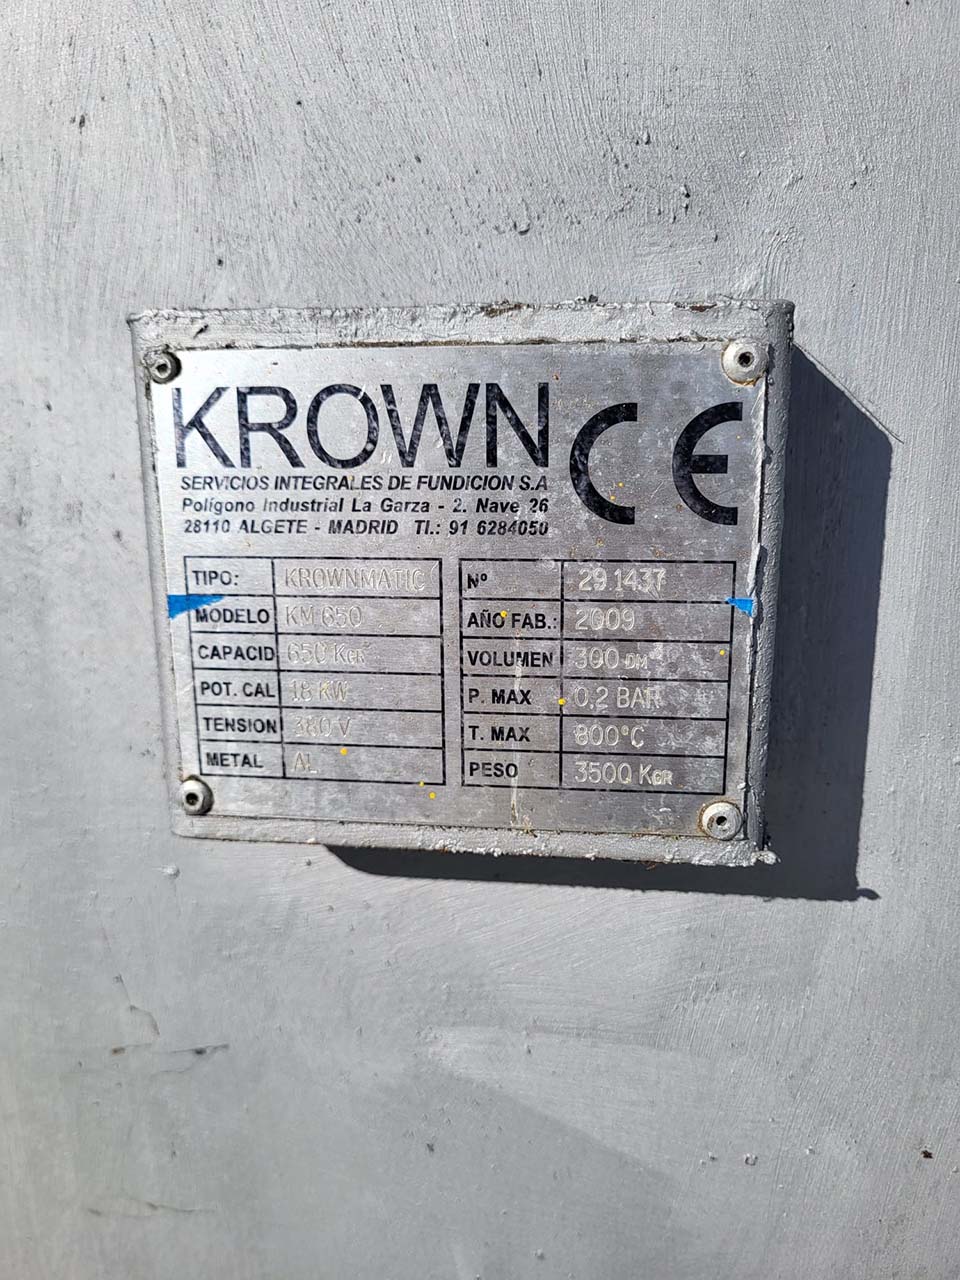 Krown Krownmatic KM 650 forno doseador O1759, utilizado